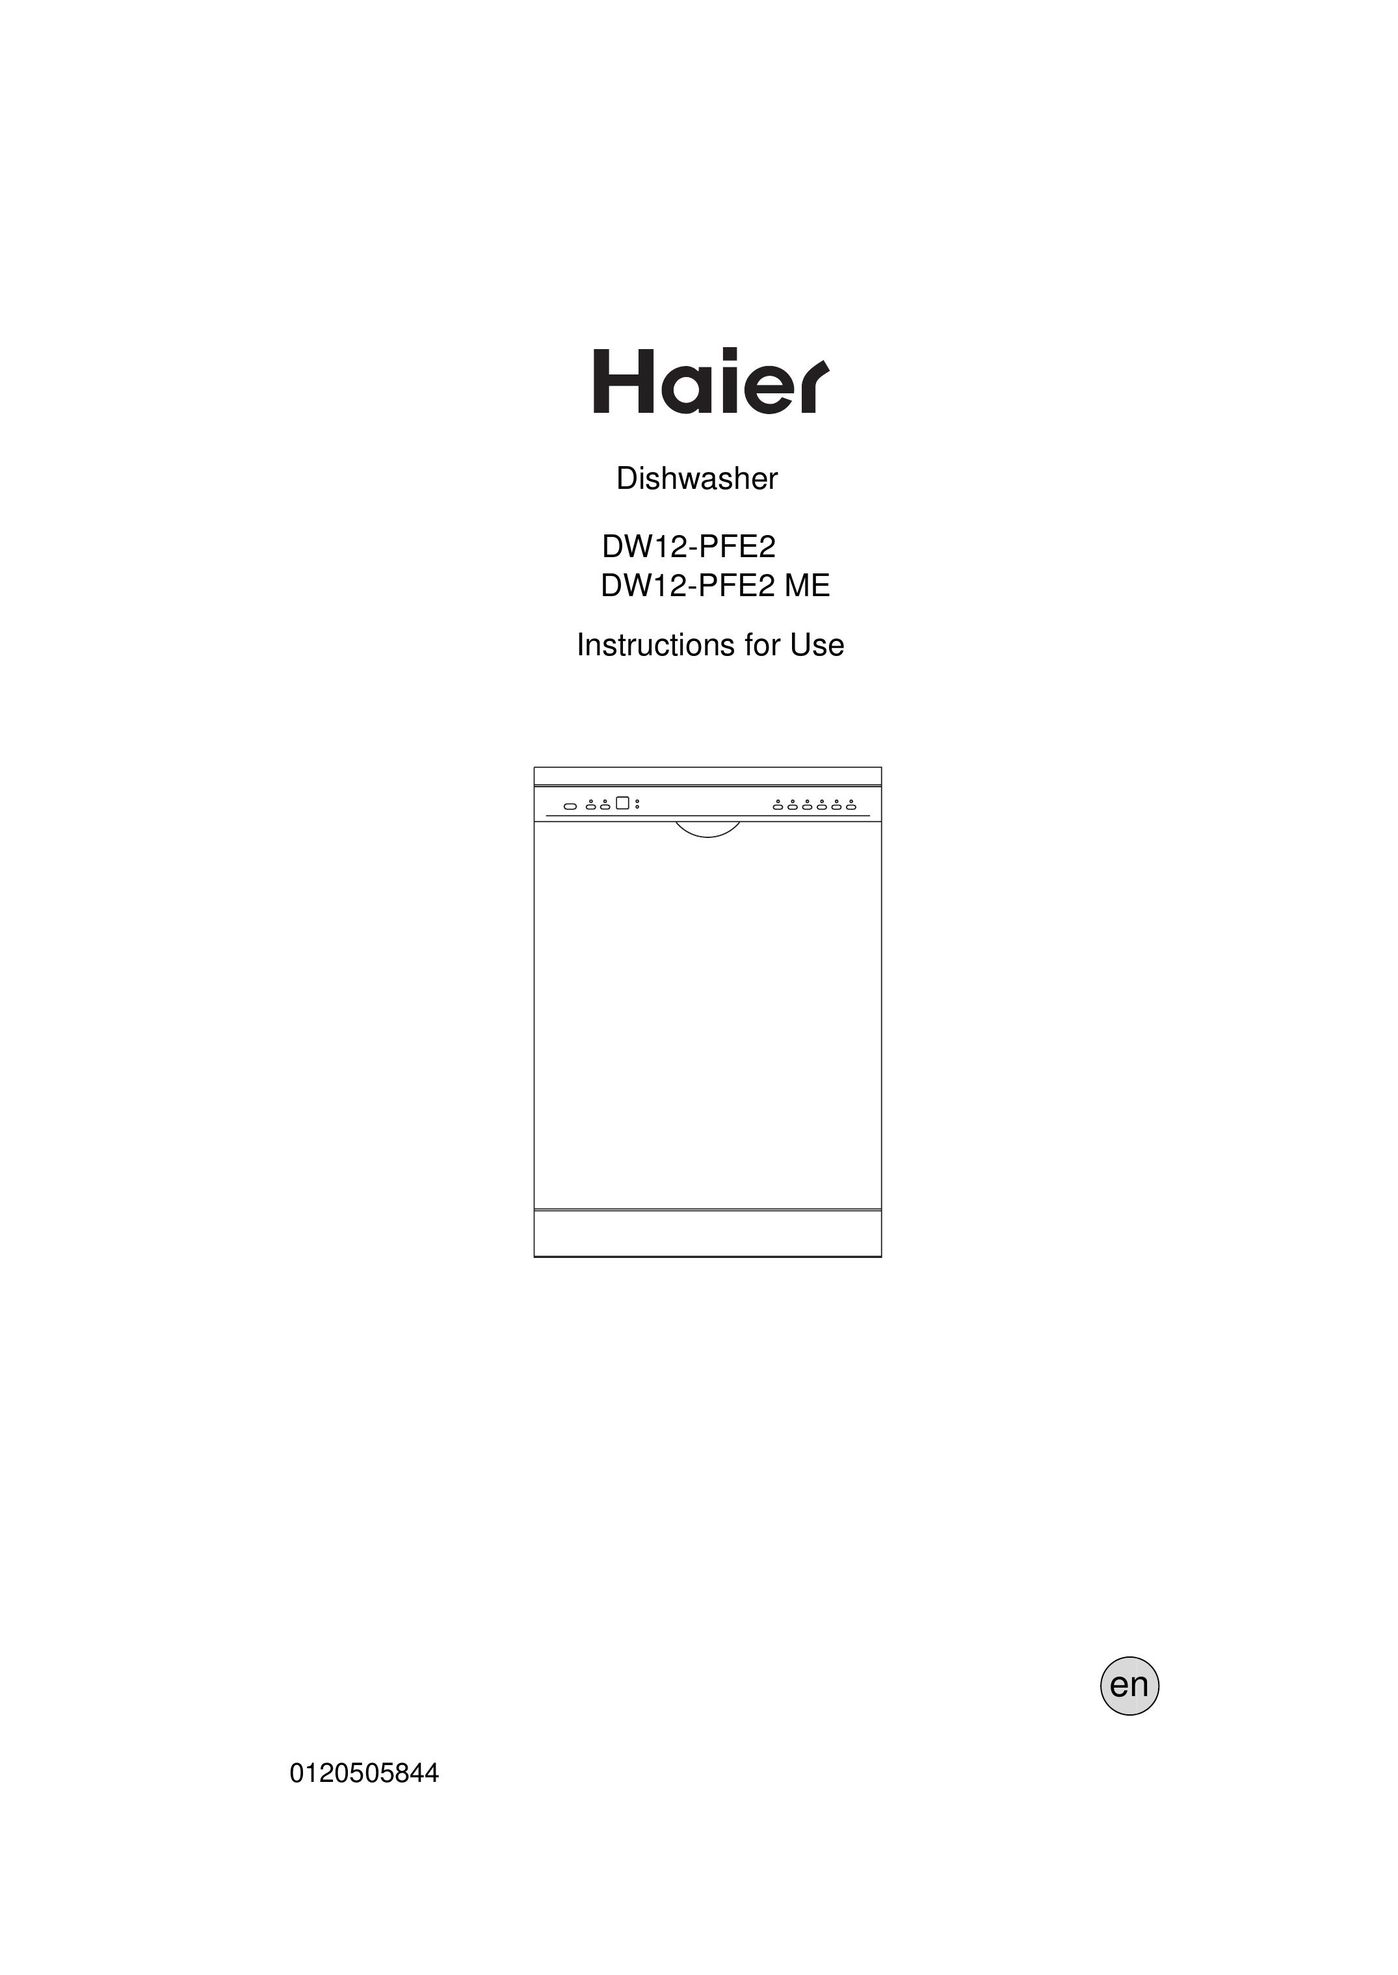 Haier DW12-PFE2 ME Dishwasher User Manual